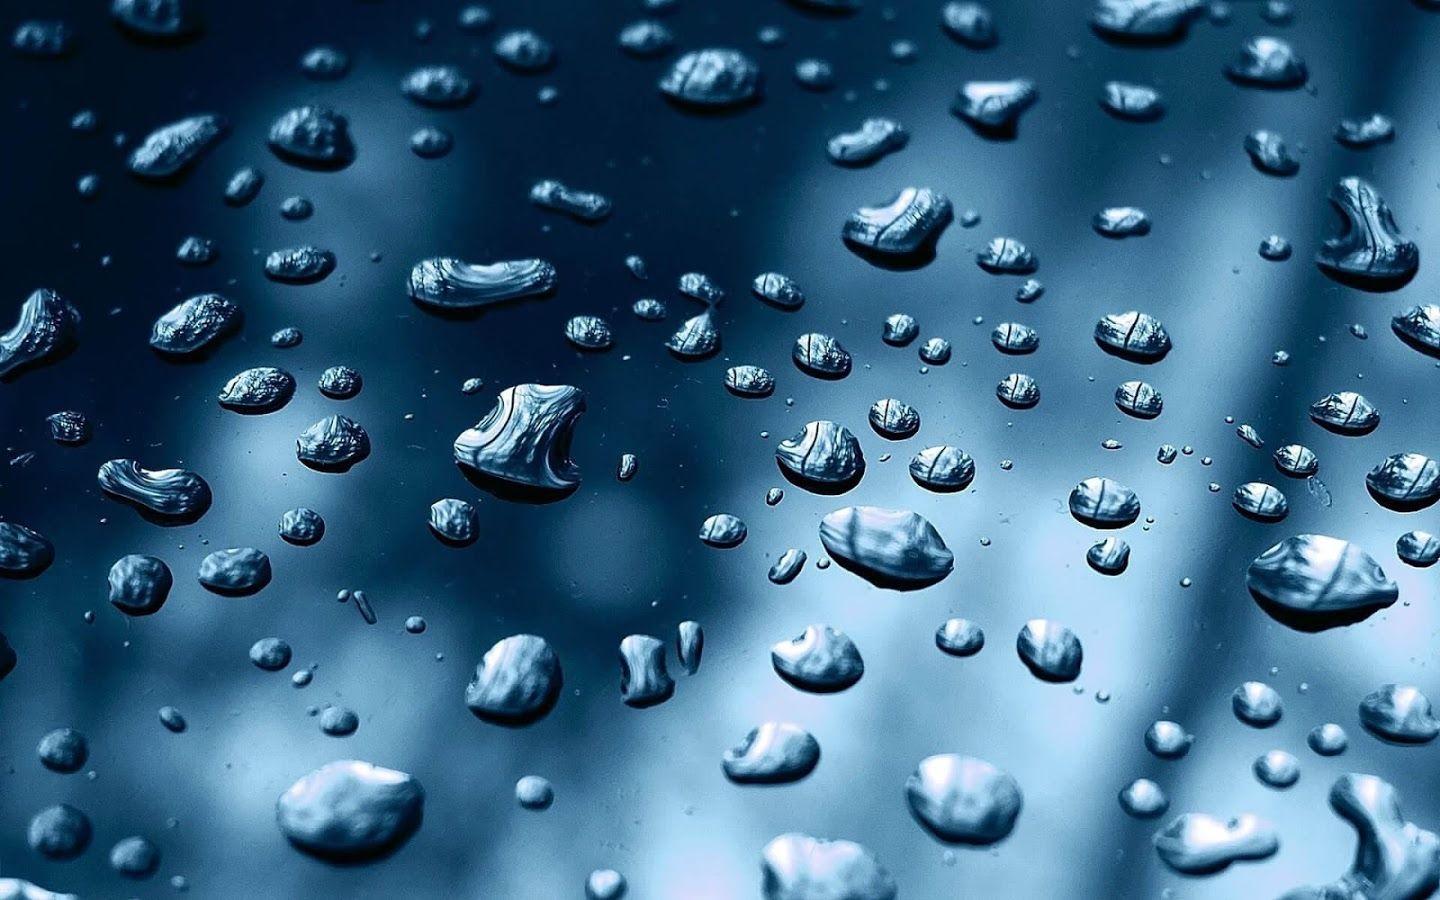 Water Drops In Air Wallpaper 28525